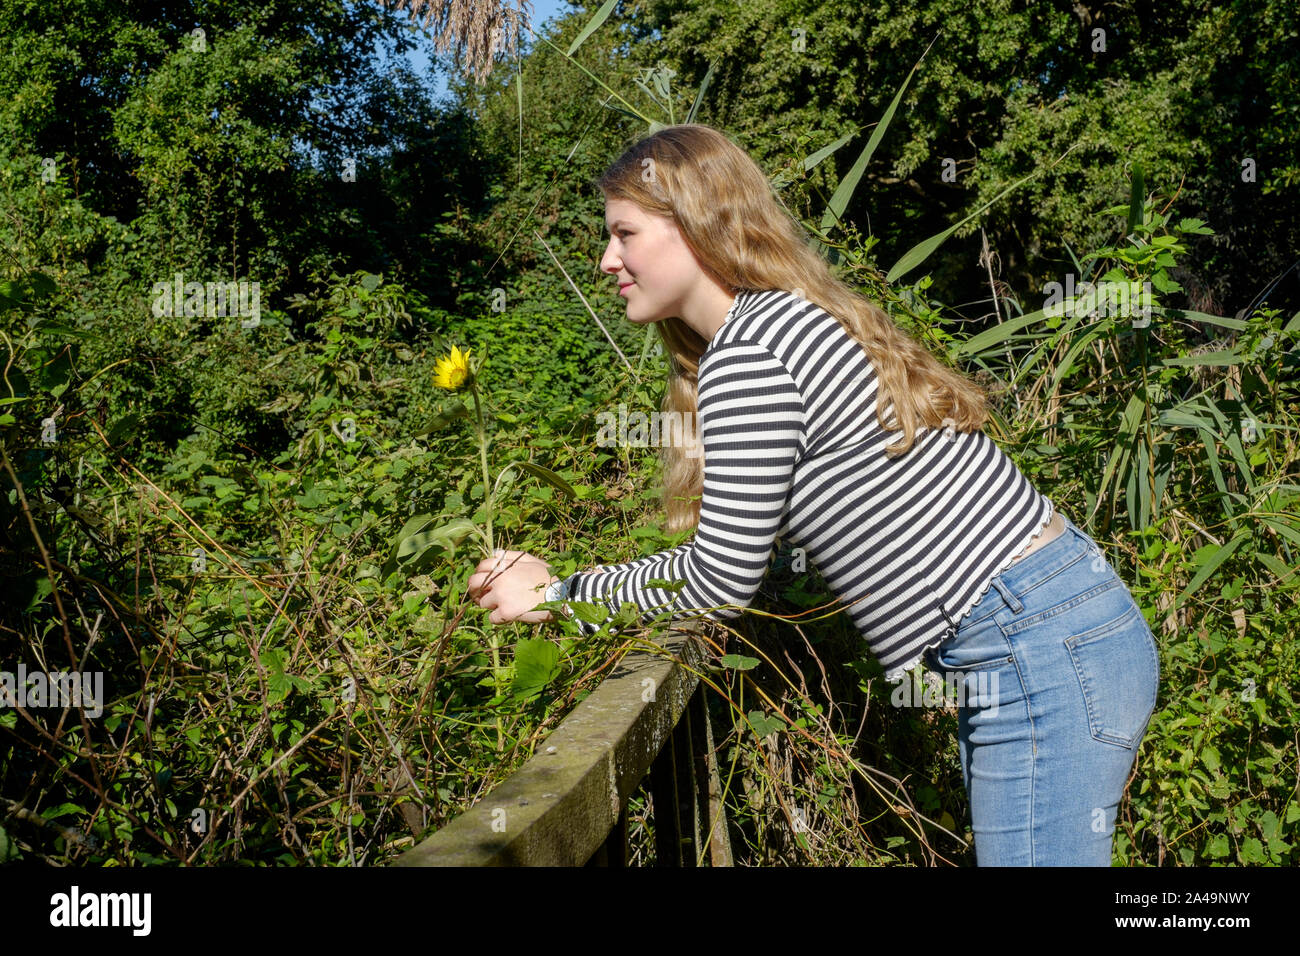 Junge Frau mit langen blonden Haaren steht alleine auf einer Brücke in ländlichen Landschaft holding Blume und Suchen in Gedanken verloren Ungarn Zala county Stockfoto